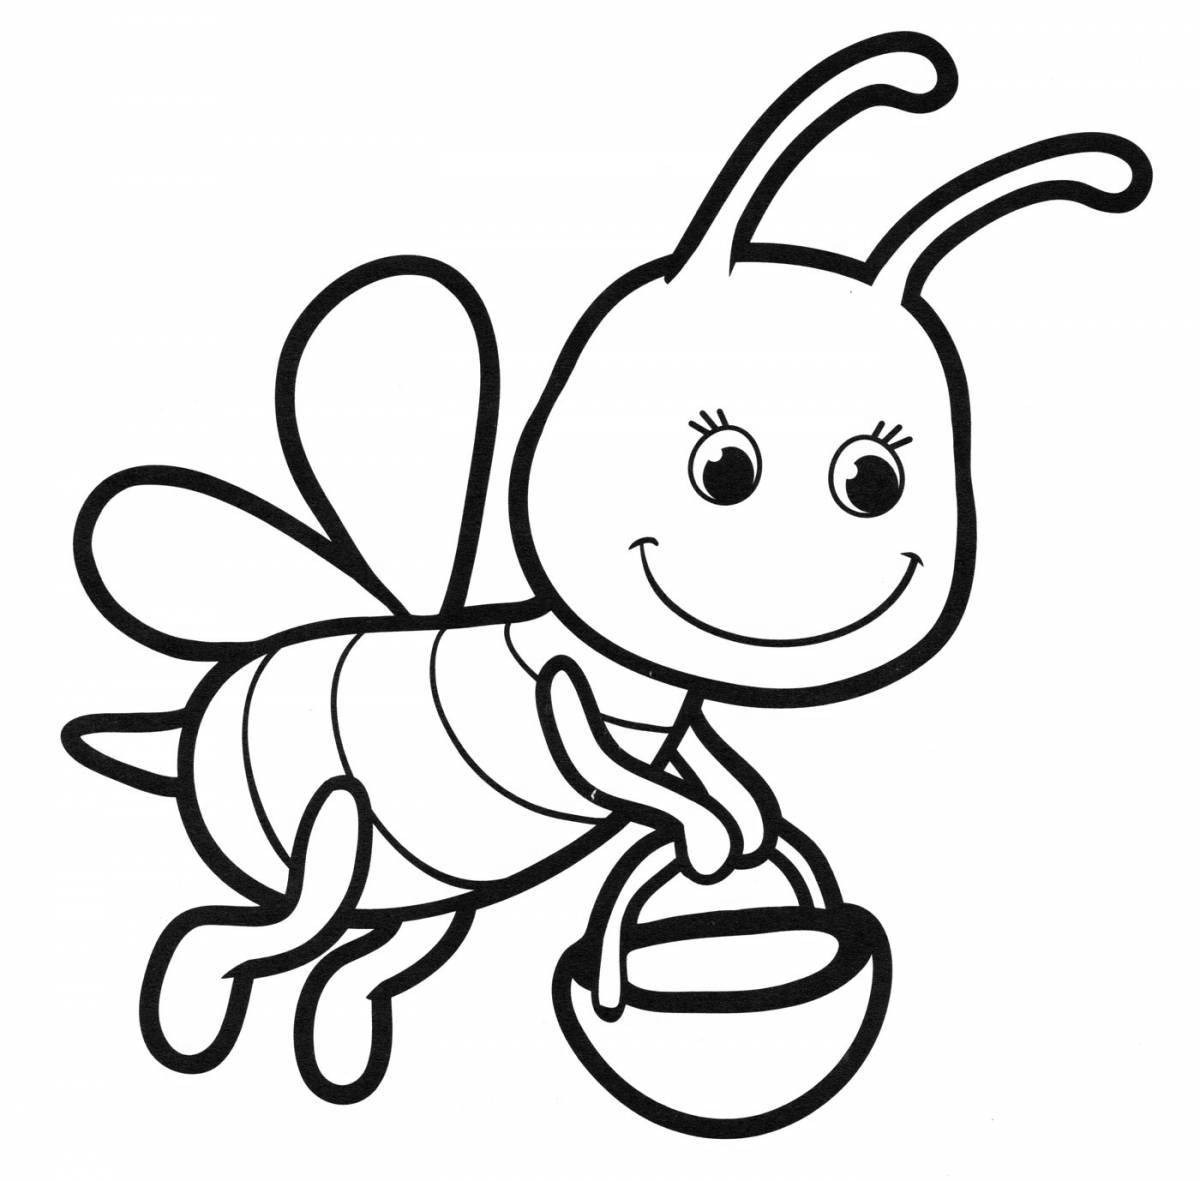 Веселая пчелка-раскраска для детей